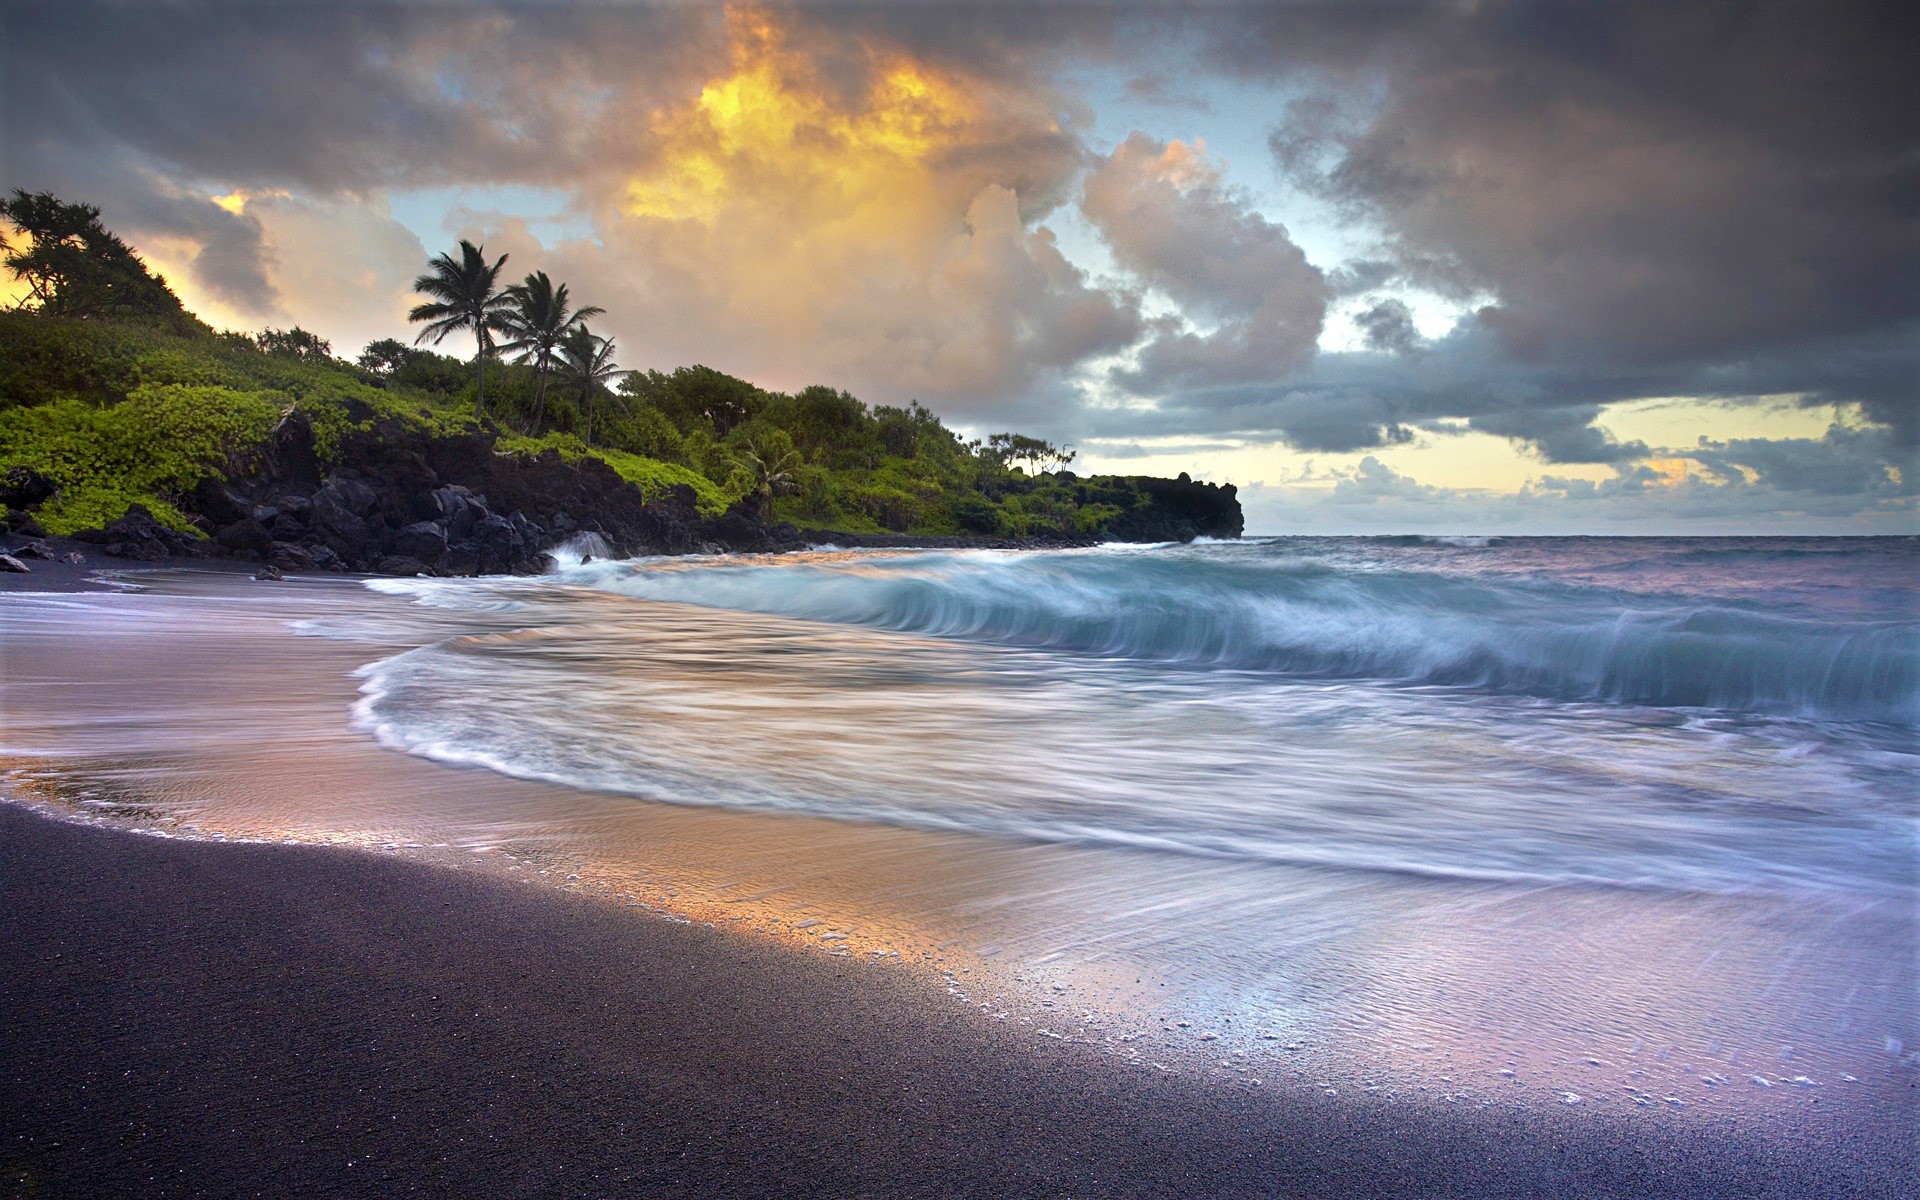 Скачать обои бесплатно Море, Облака, Пляж, Пальмы, Горизонт, Океан, Гавайи, Земля/природа картинка на рабочий стол ПК